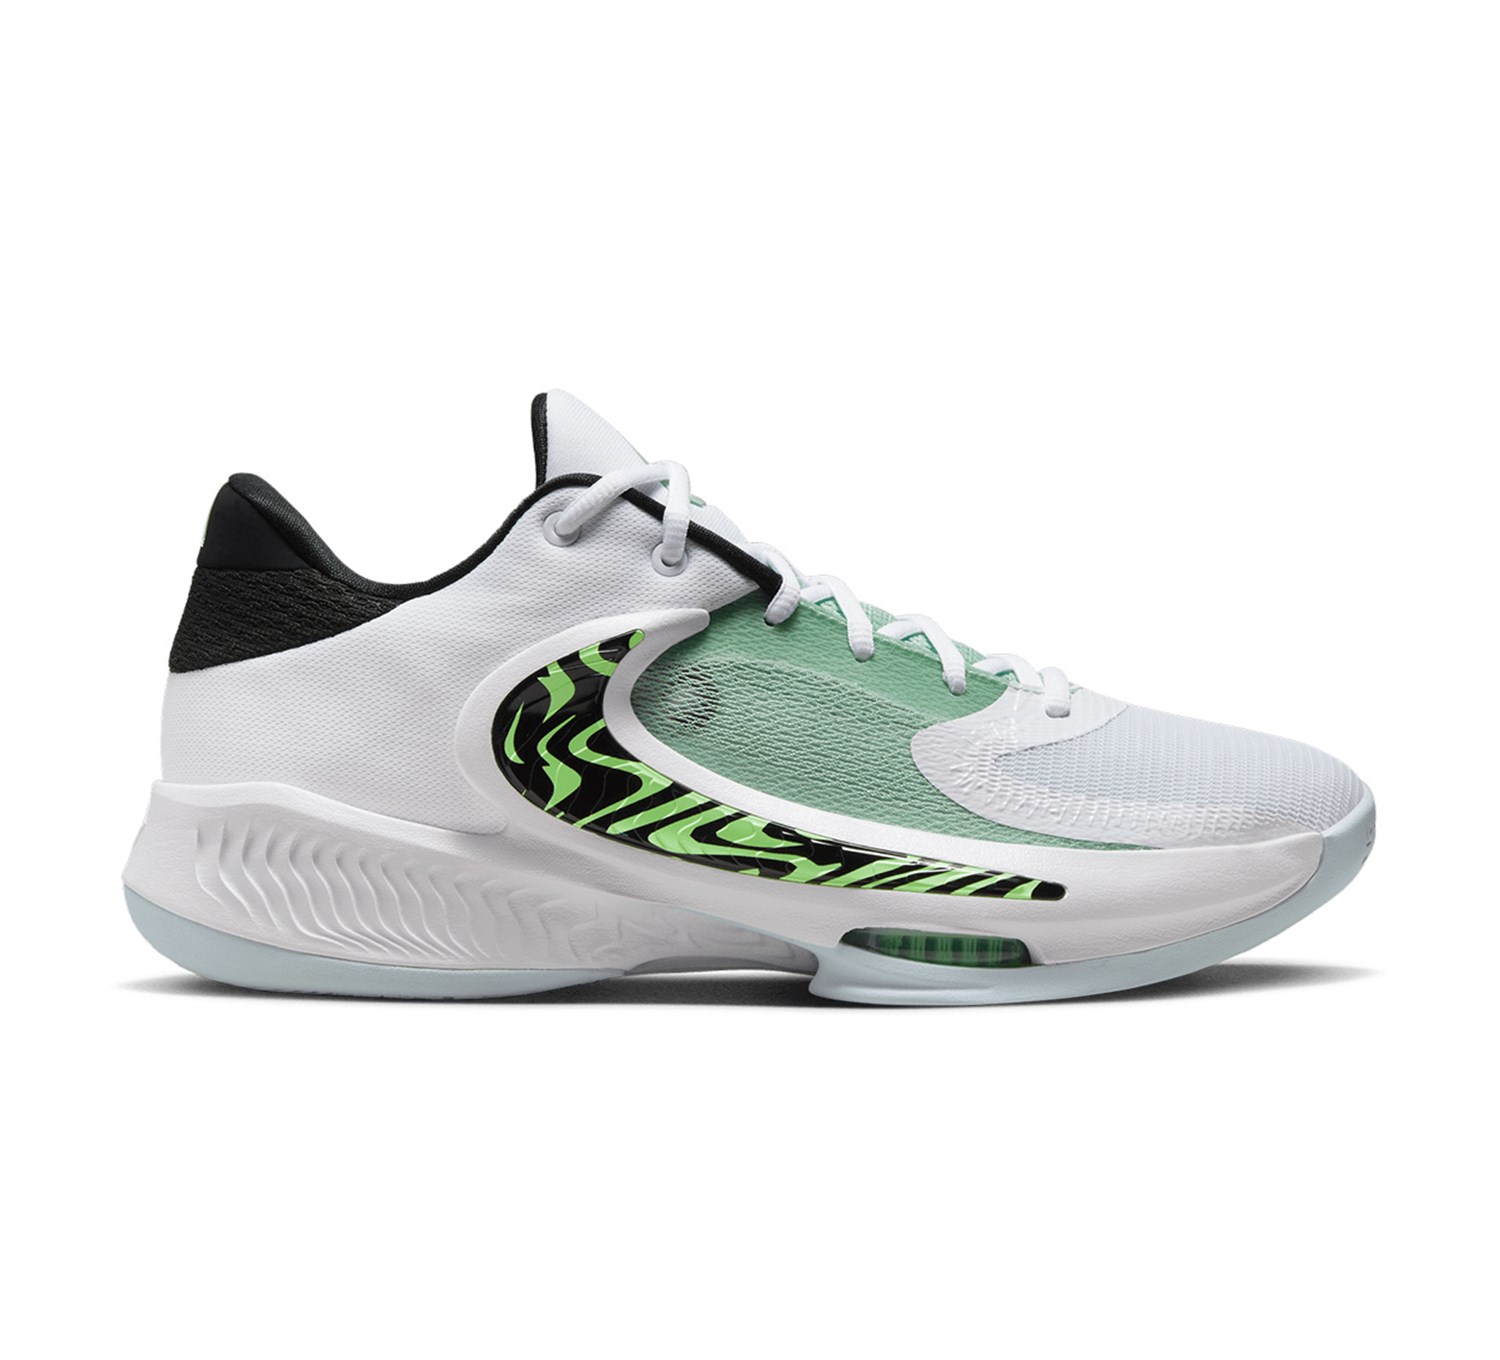 Nike Zoom Freak 4 "Birthstone" Basketbol Ayakkabı DJ6149-100